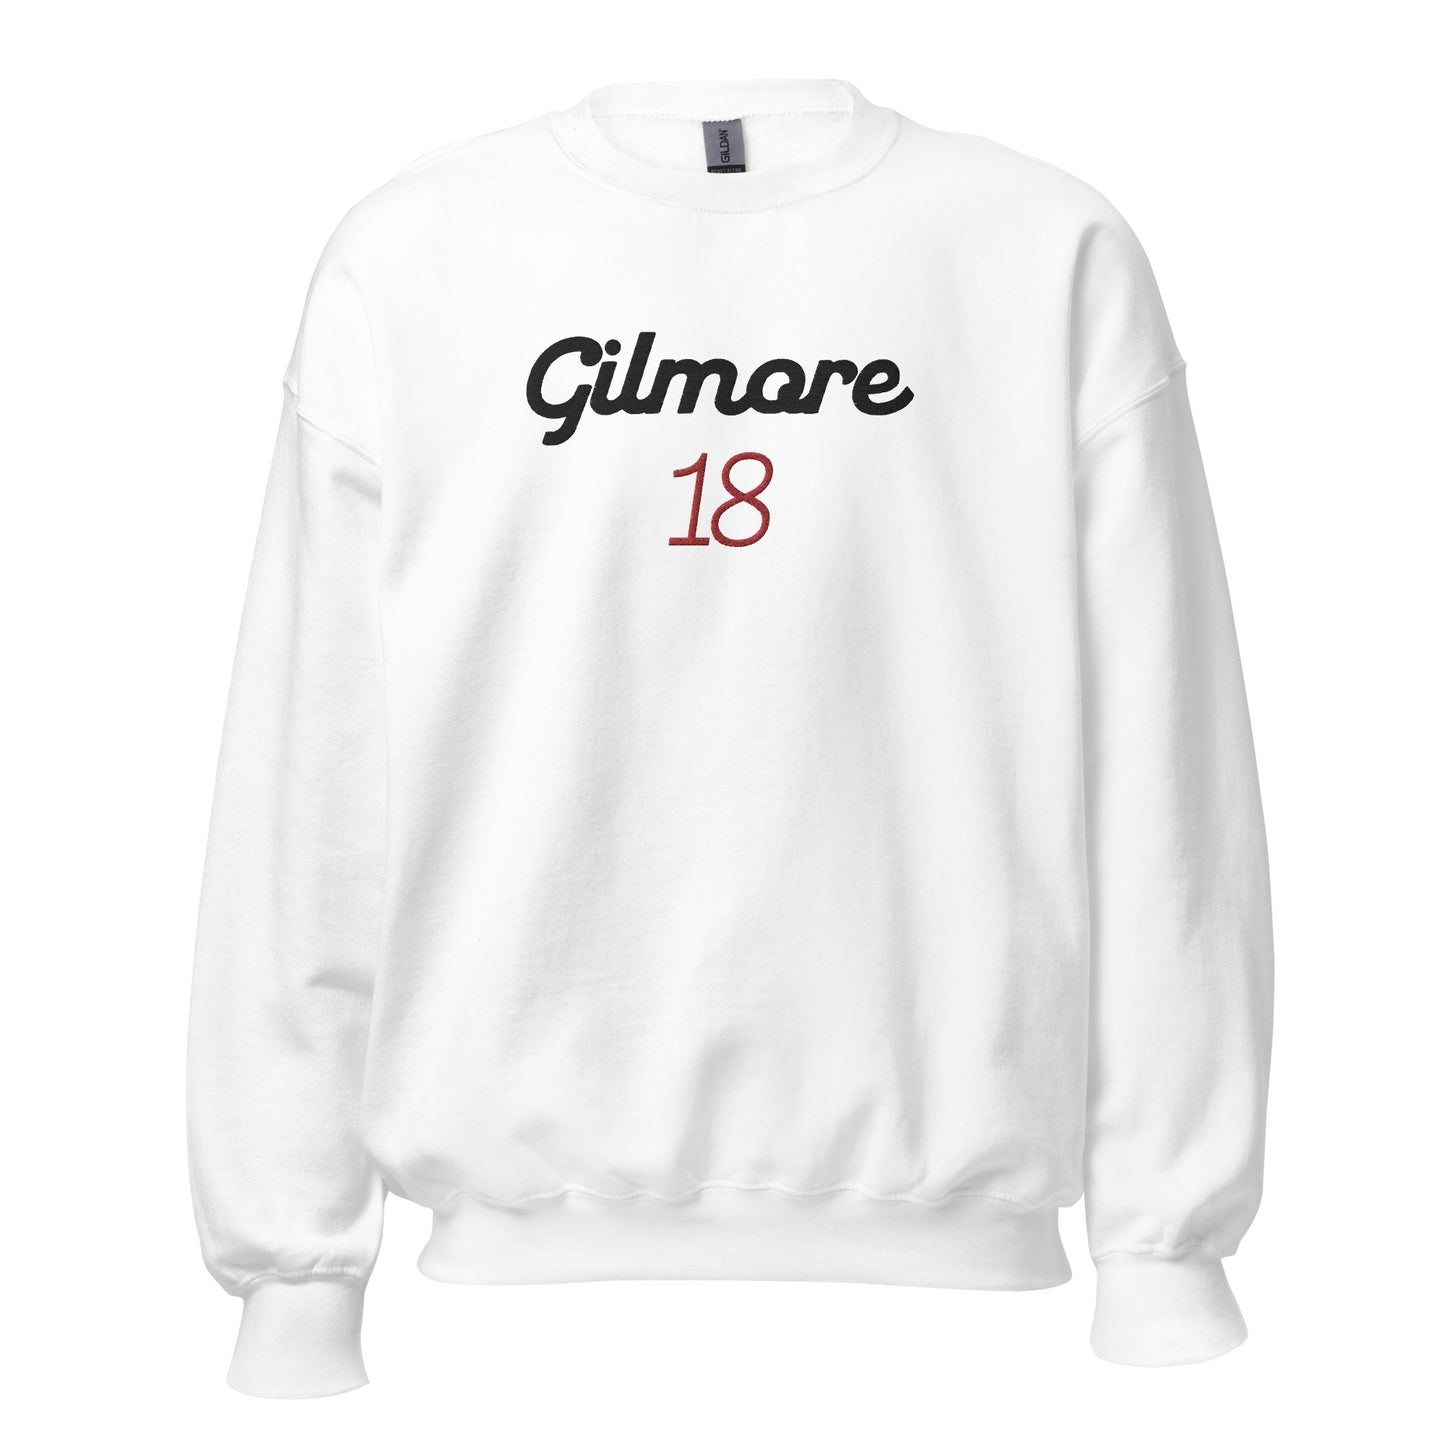 Gilmore 18 crewneck sweatshirt